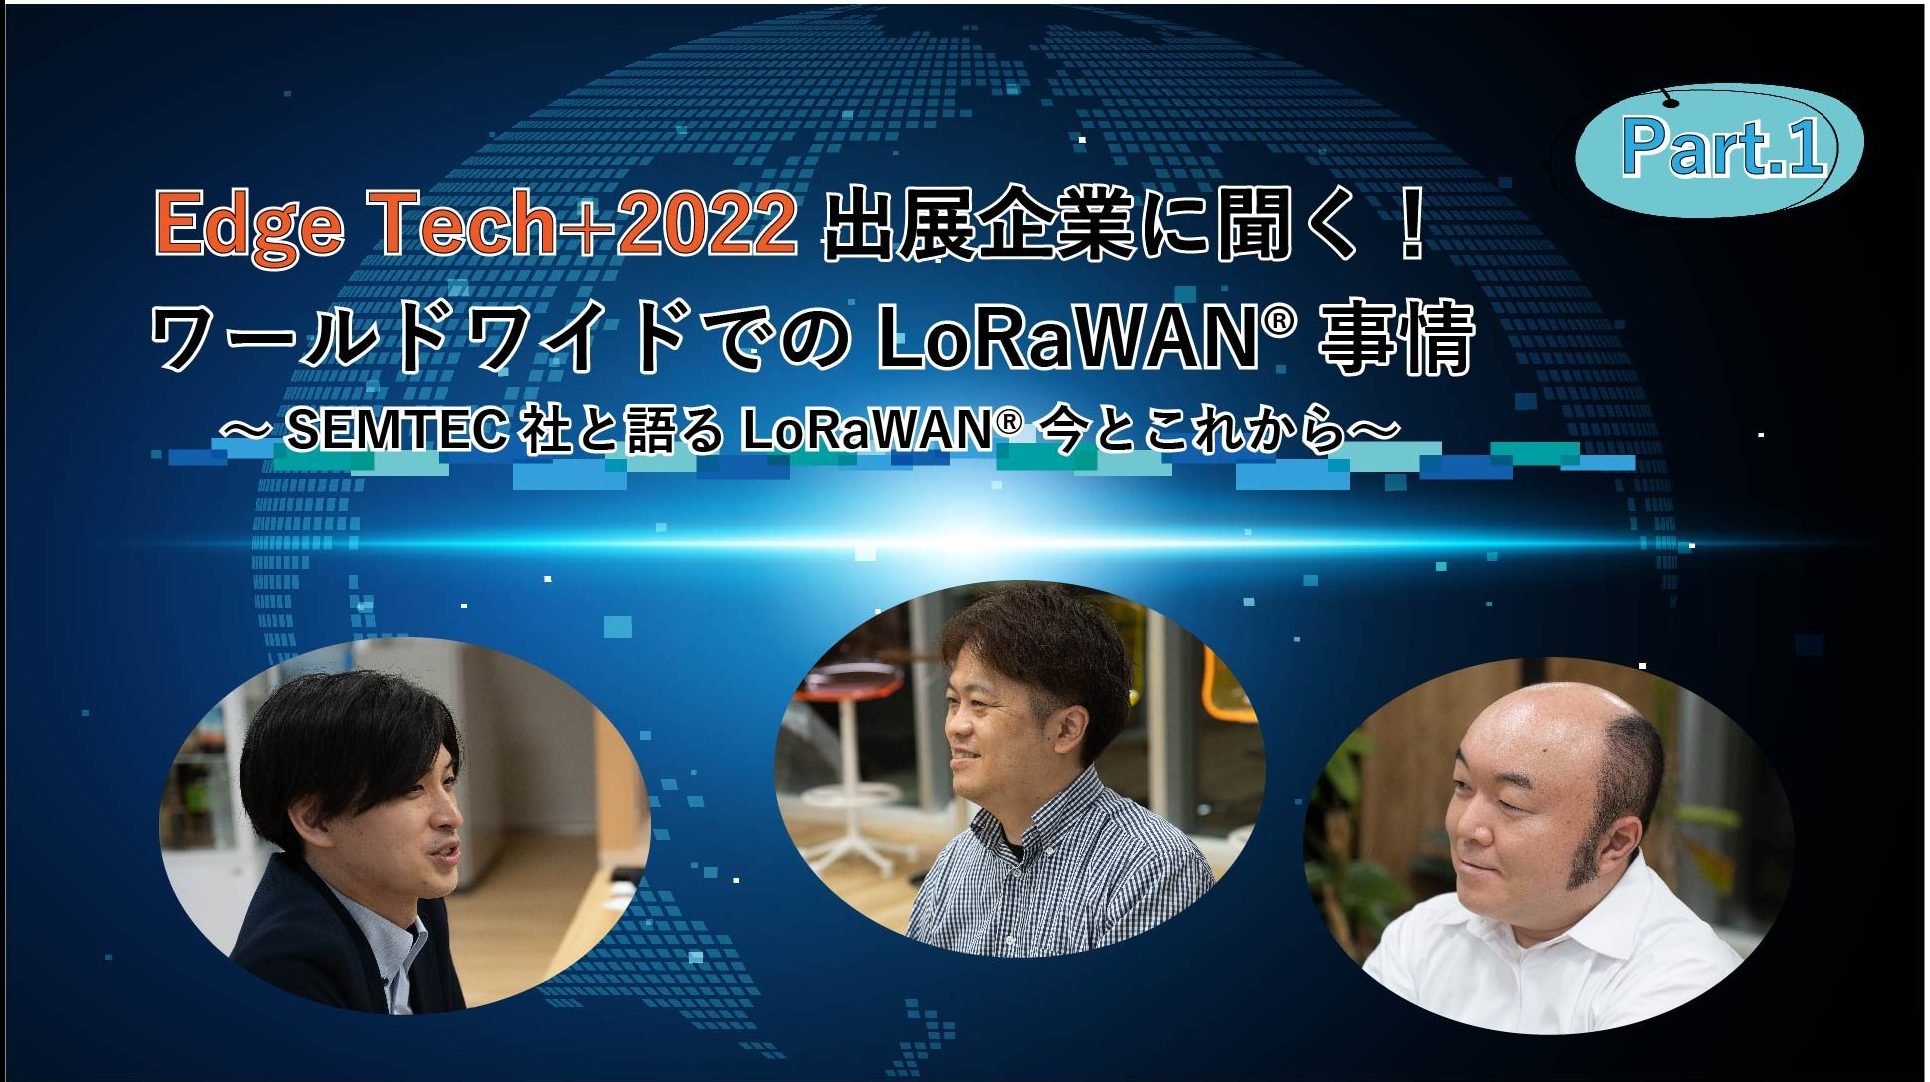 「EdgeTech+2022出展企業に聞く！ワールドワイドでのLoRaWAN®事情  ～Semtech社と語るLoRaWAN®今とこれから～　Part1」のイメージ